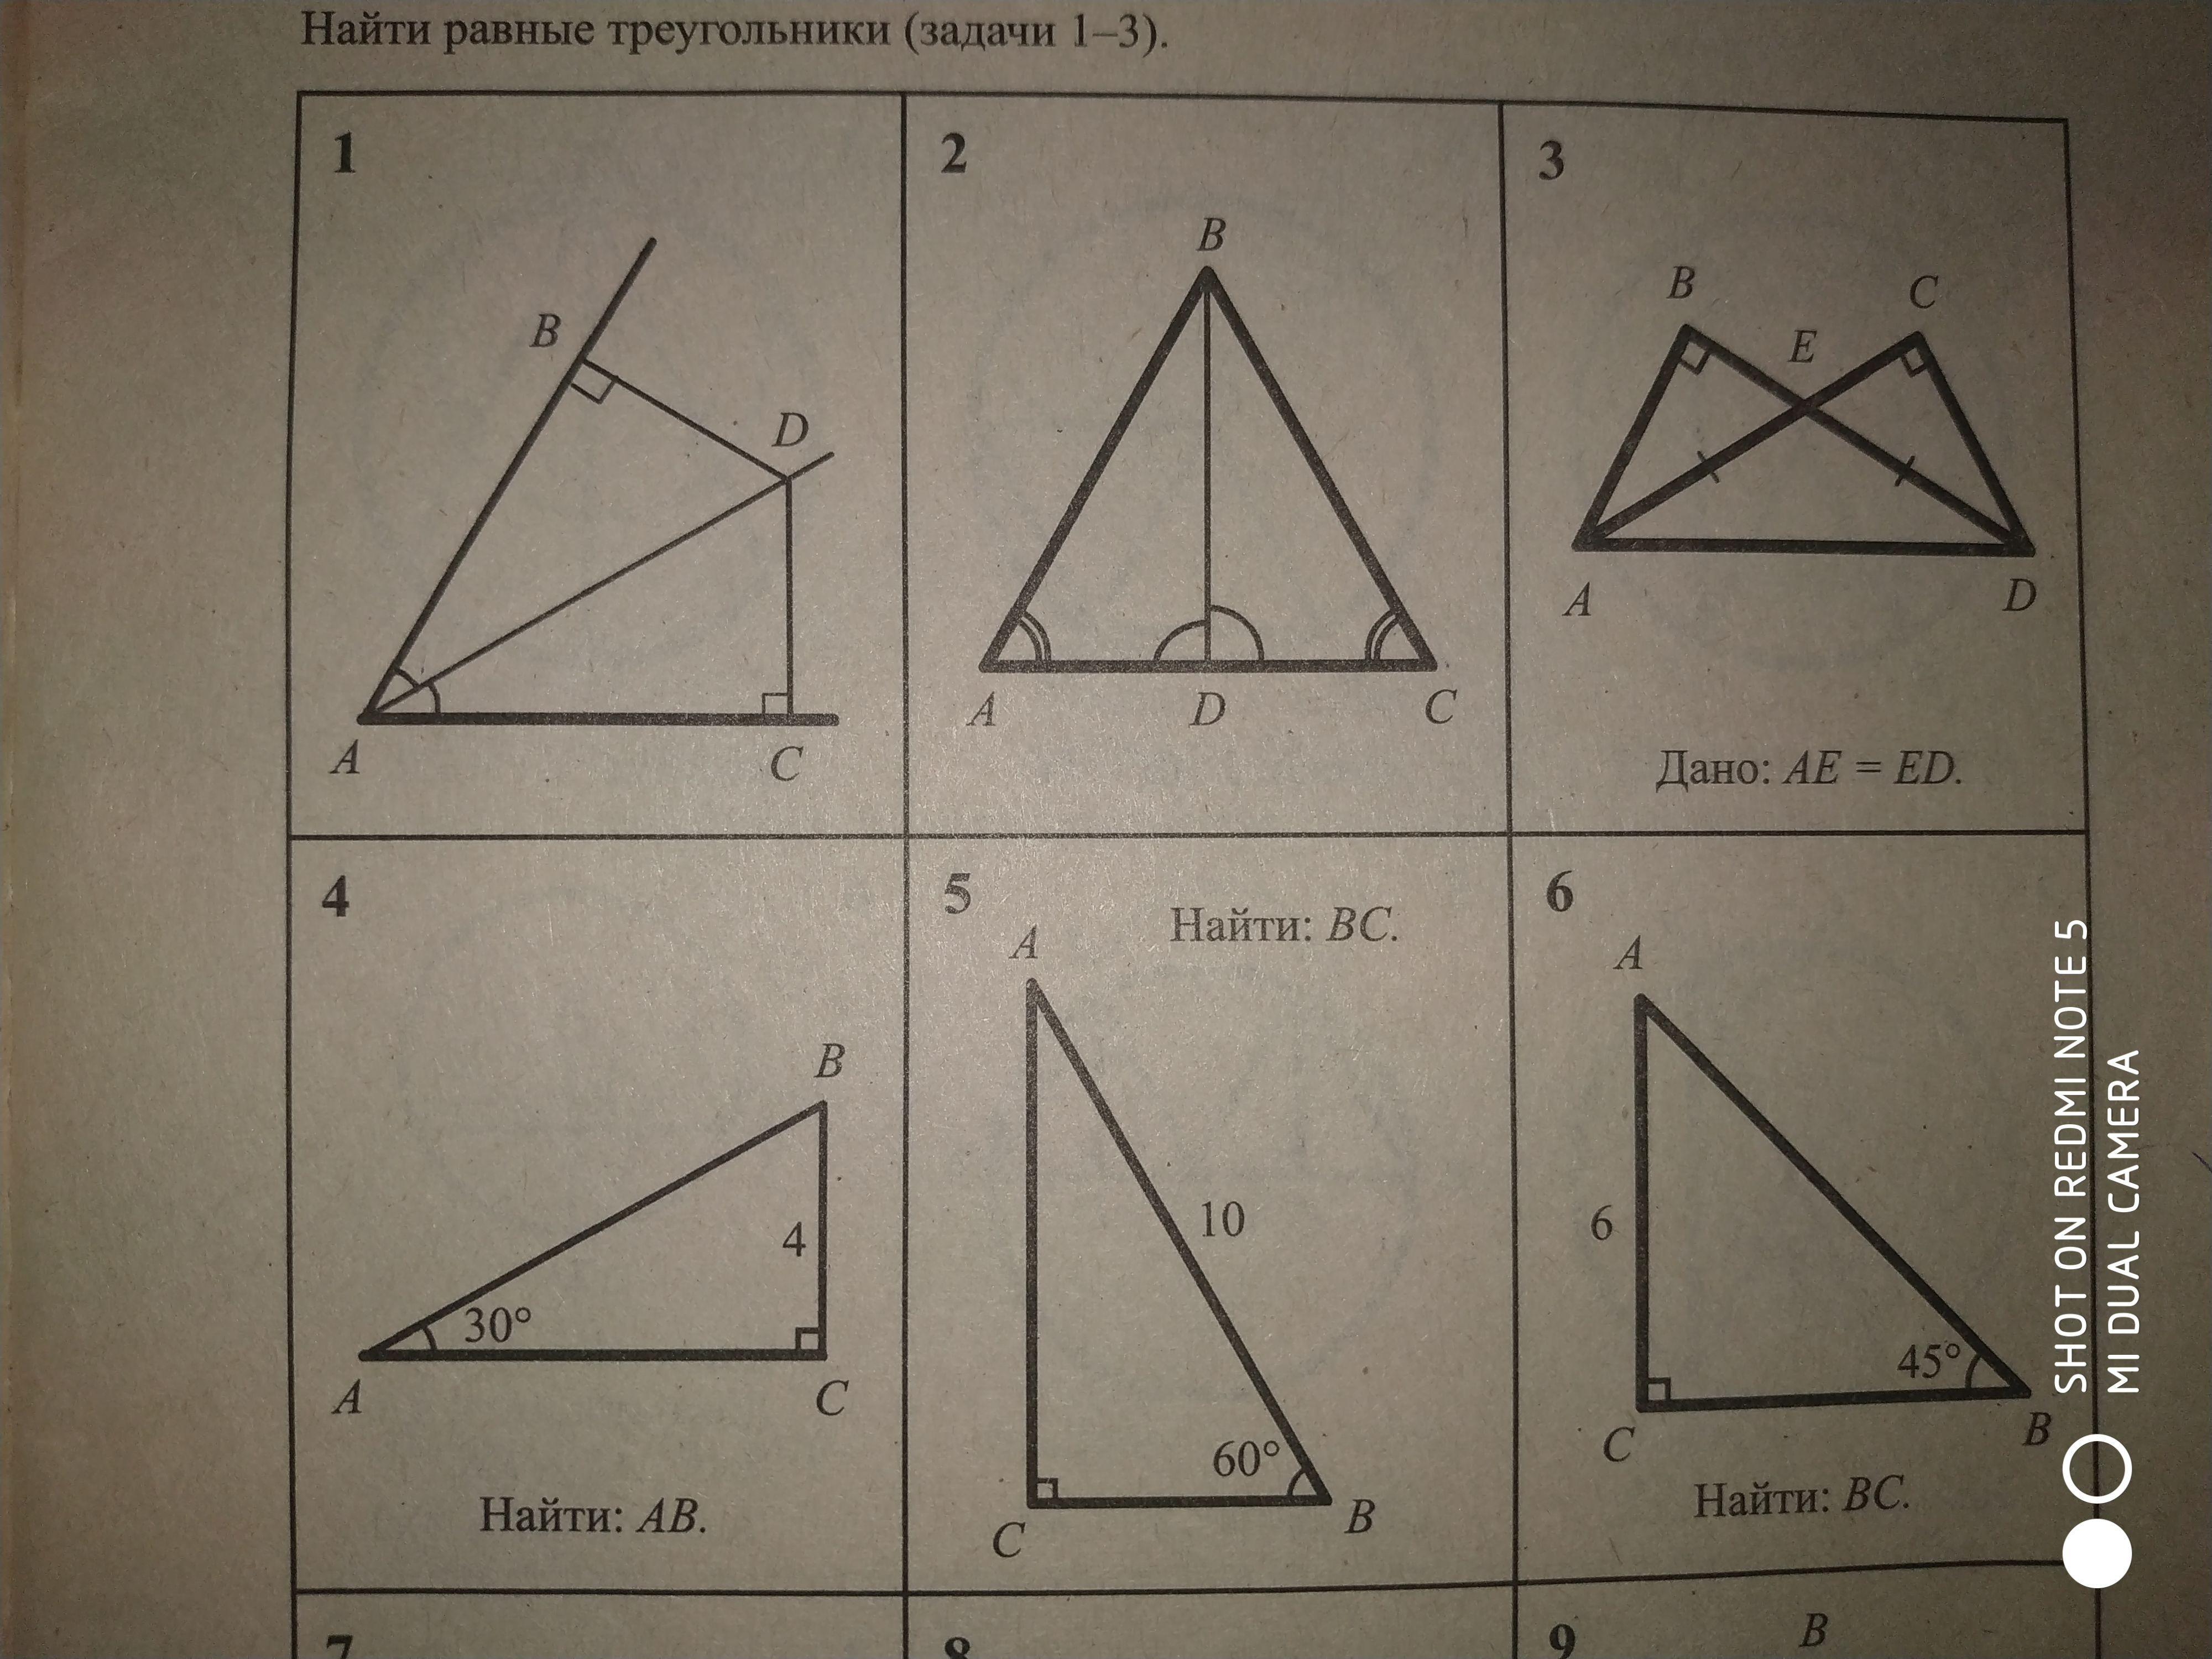 Найди равно. Найдите равные треугольники. Найти равные треугольники задачи. Равные треугольники задания. Задачи с треугольниками.